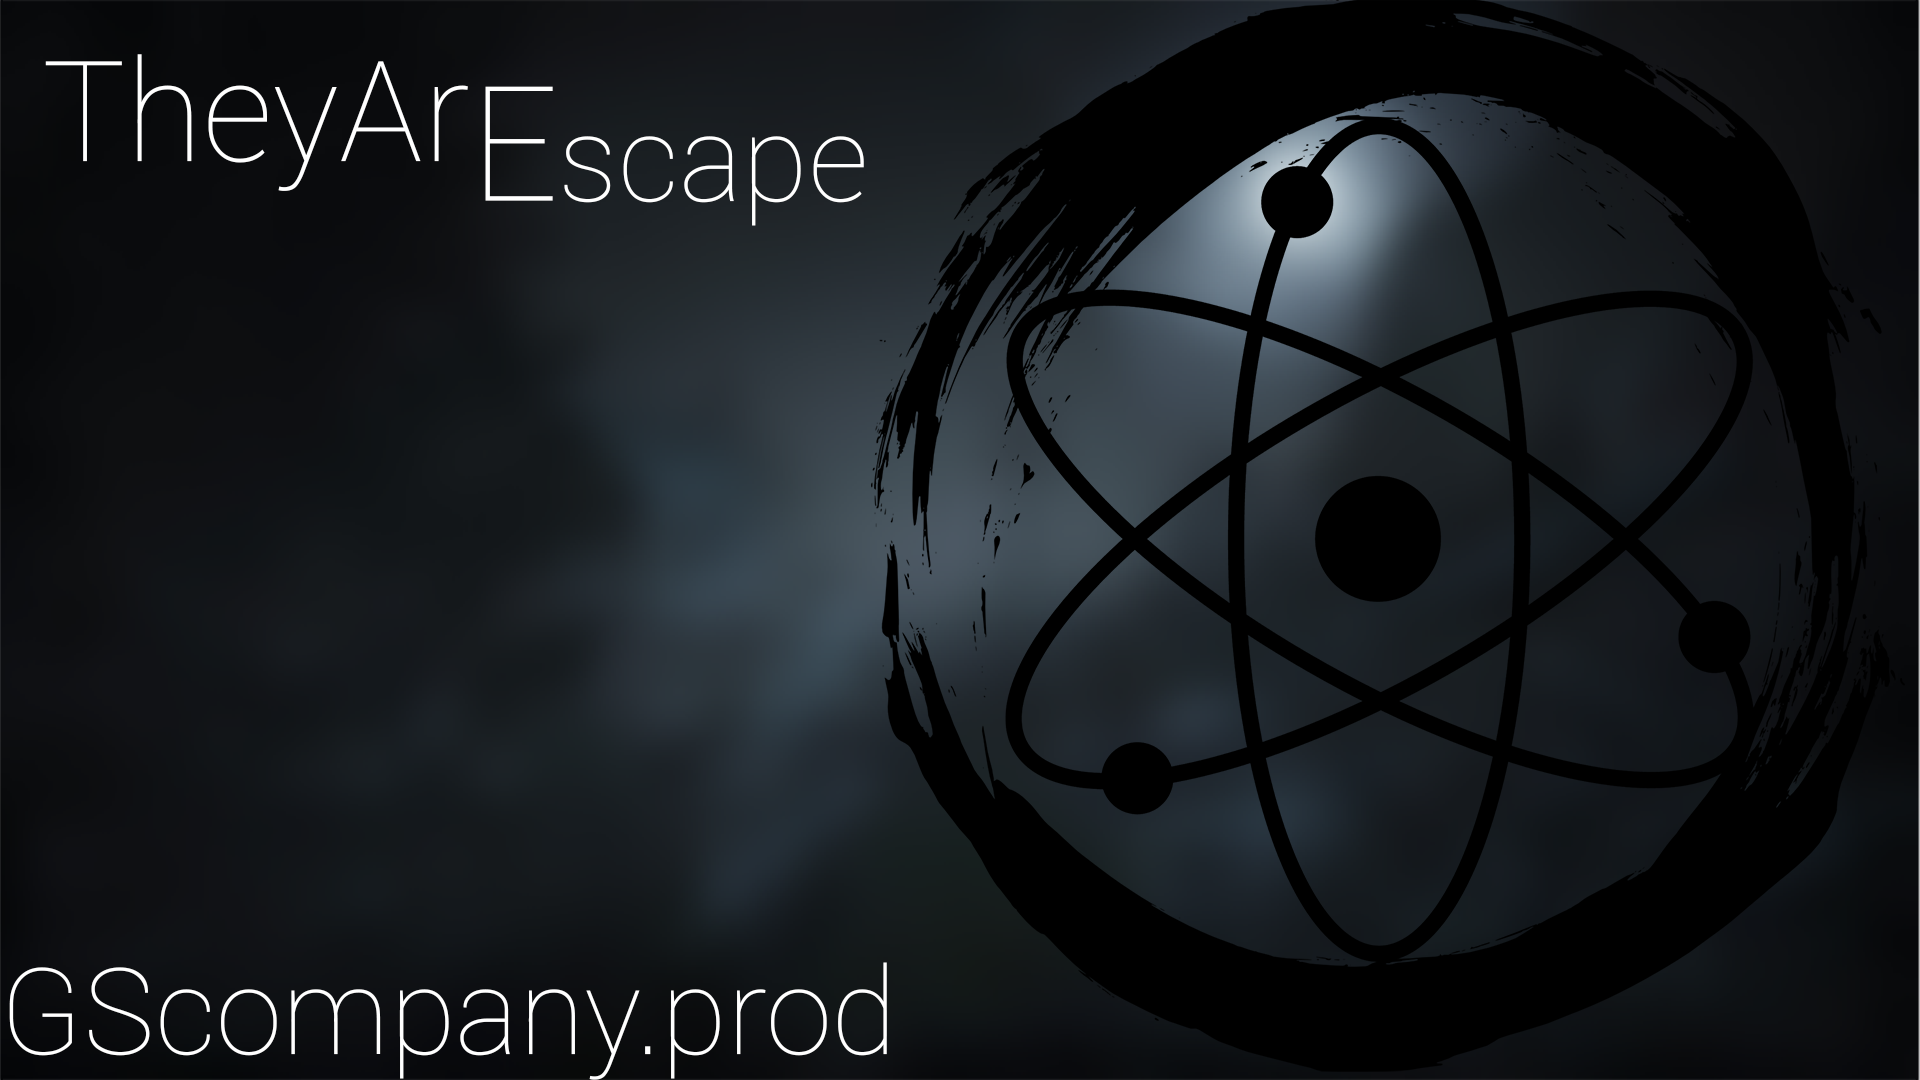 TheyAre Escape